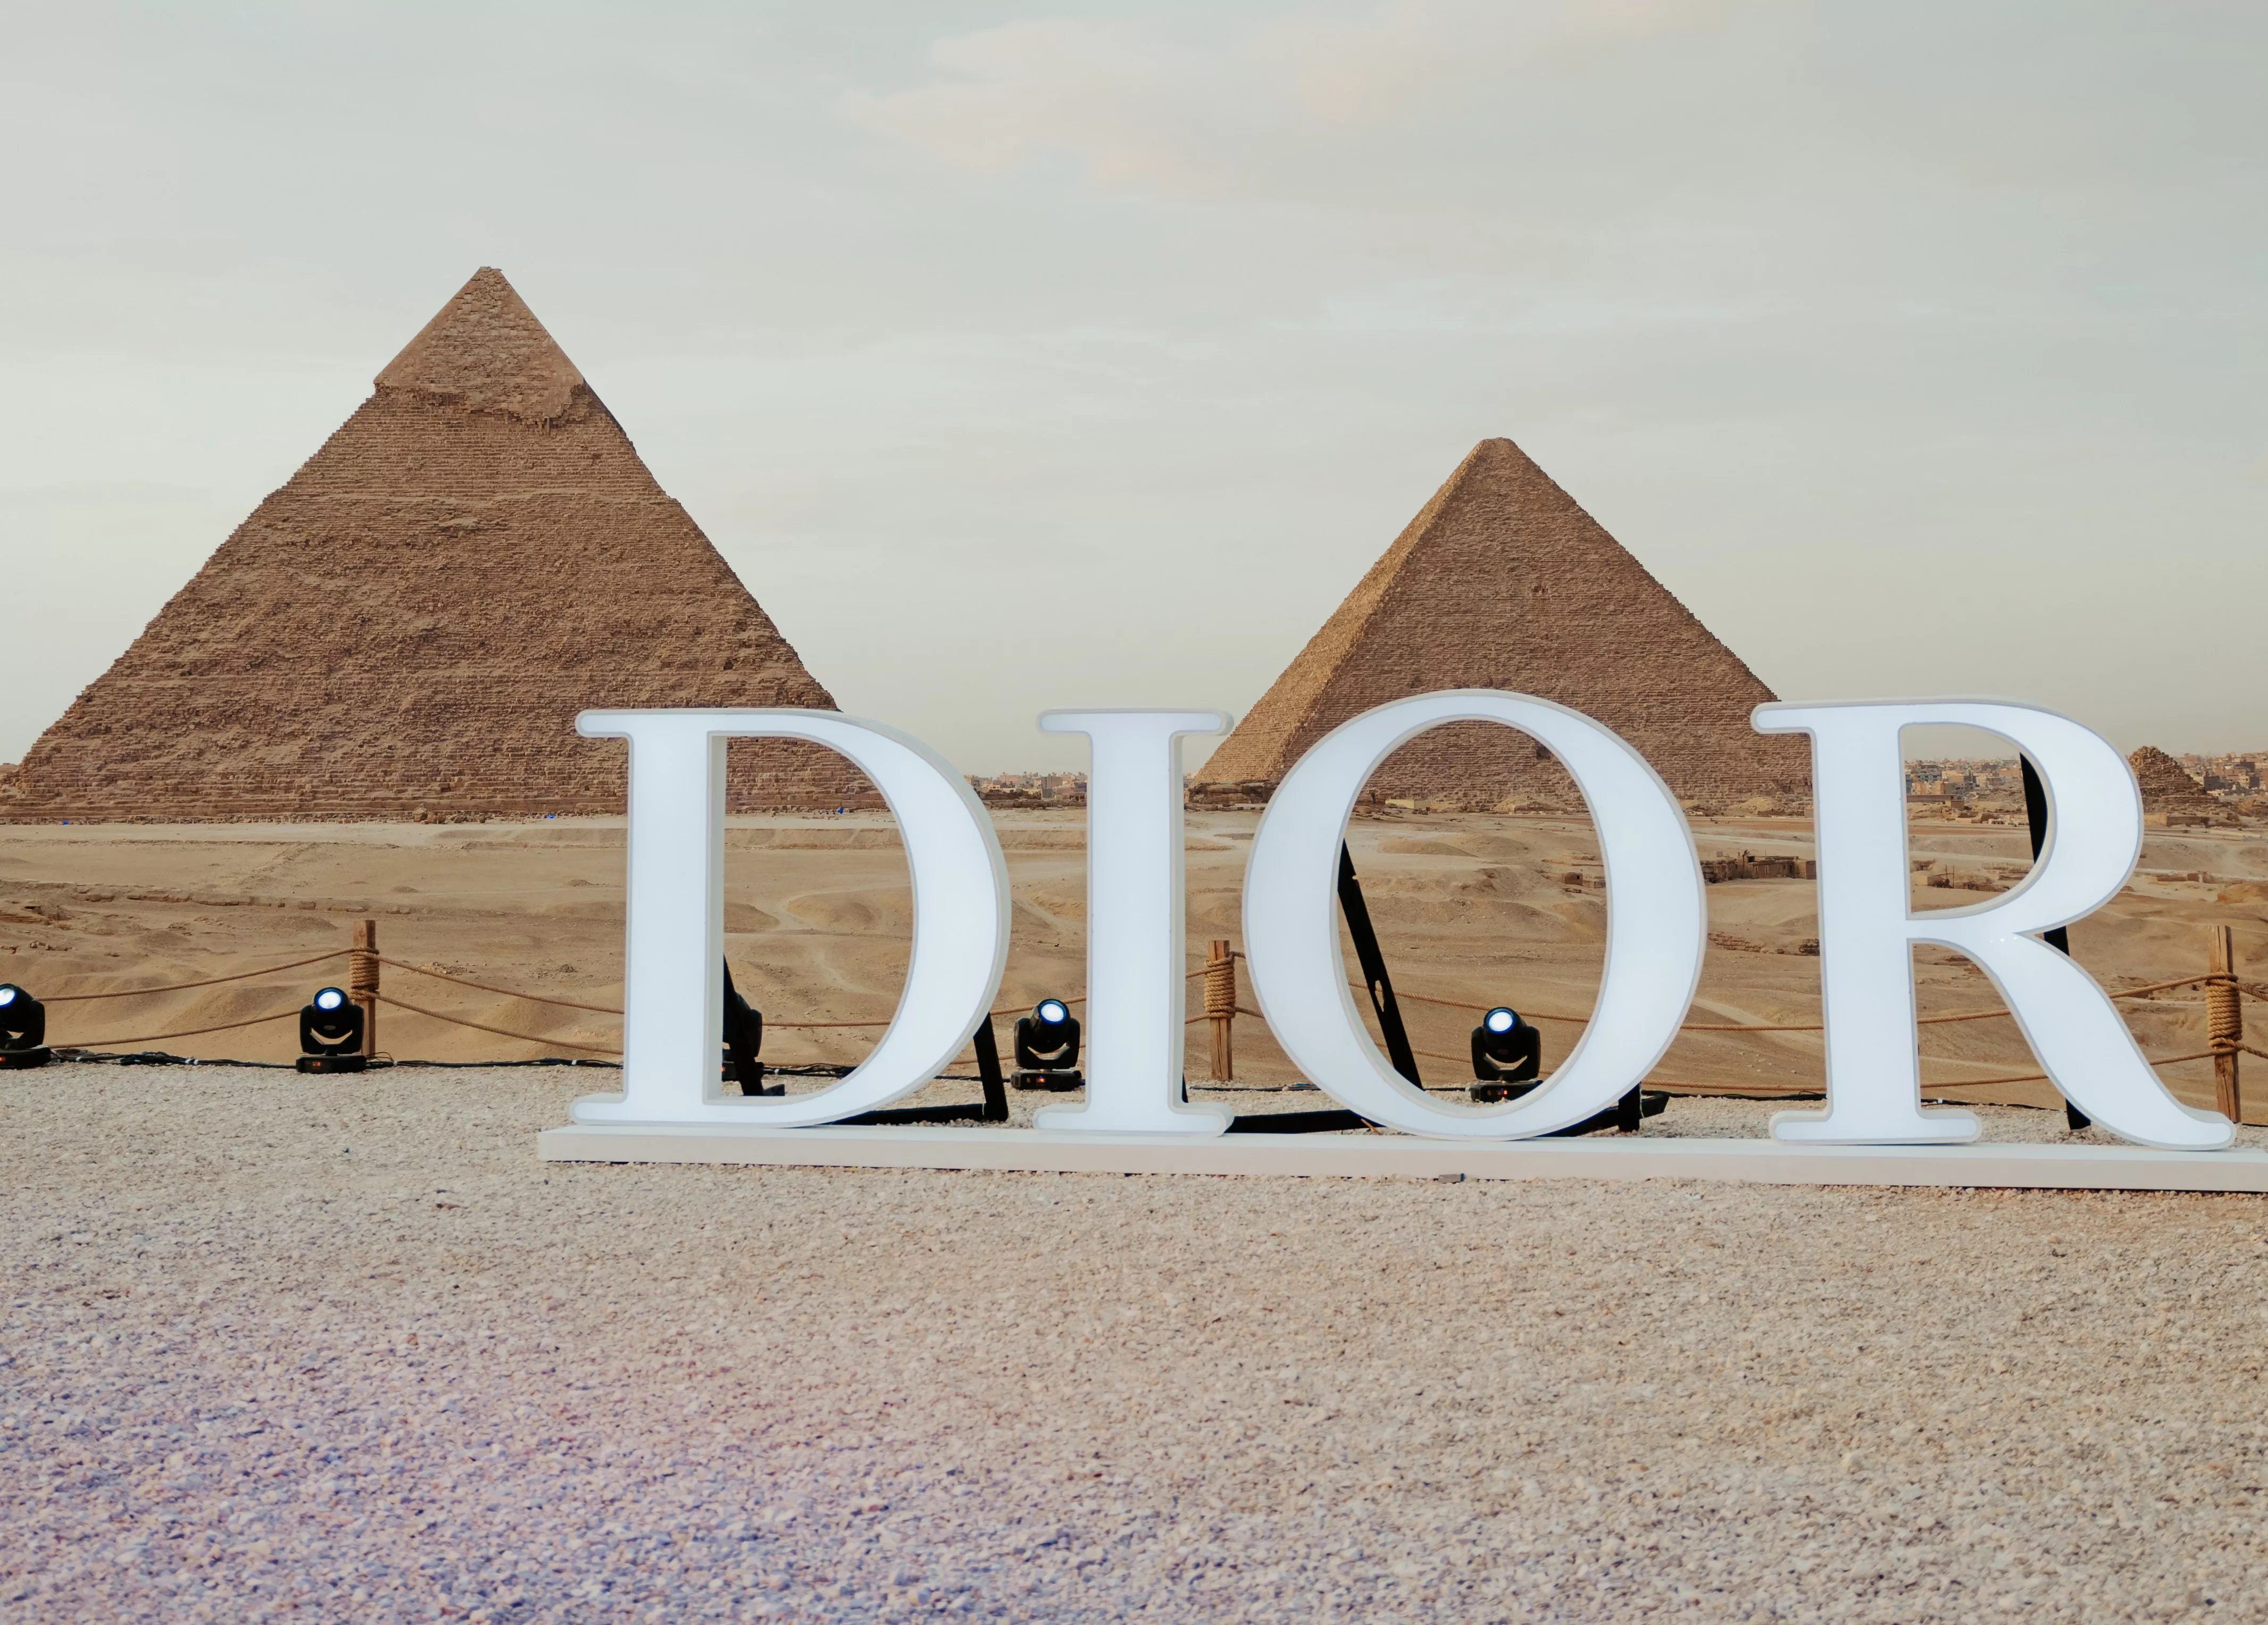 ديور تحتفل بعطر Dior Sauvge في أهرامات الجيزة في مصر، بحضور أبرز المشاهير